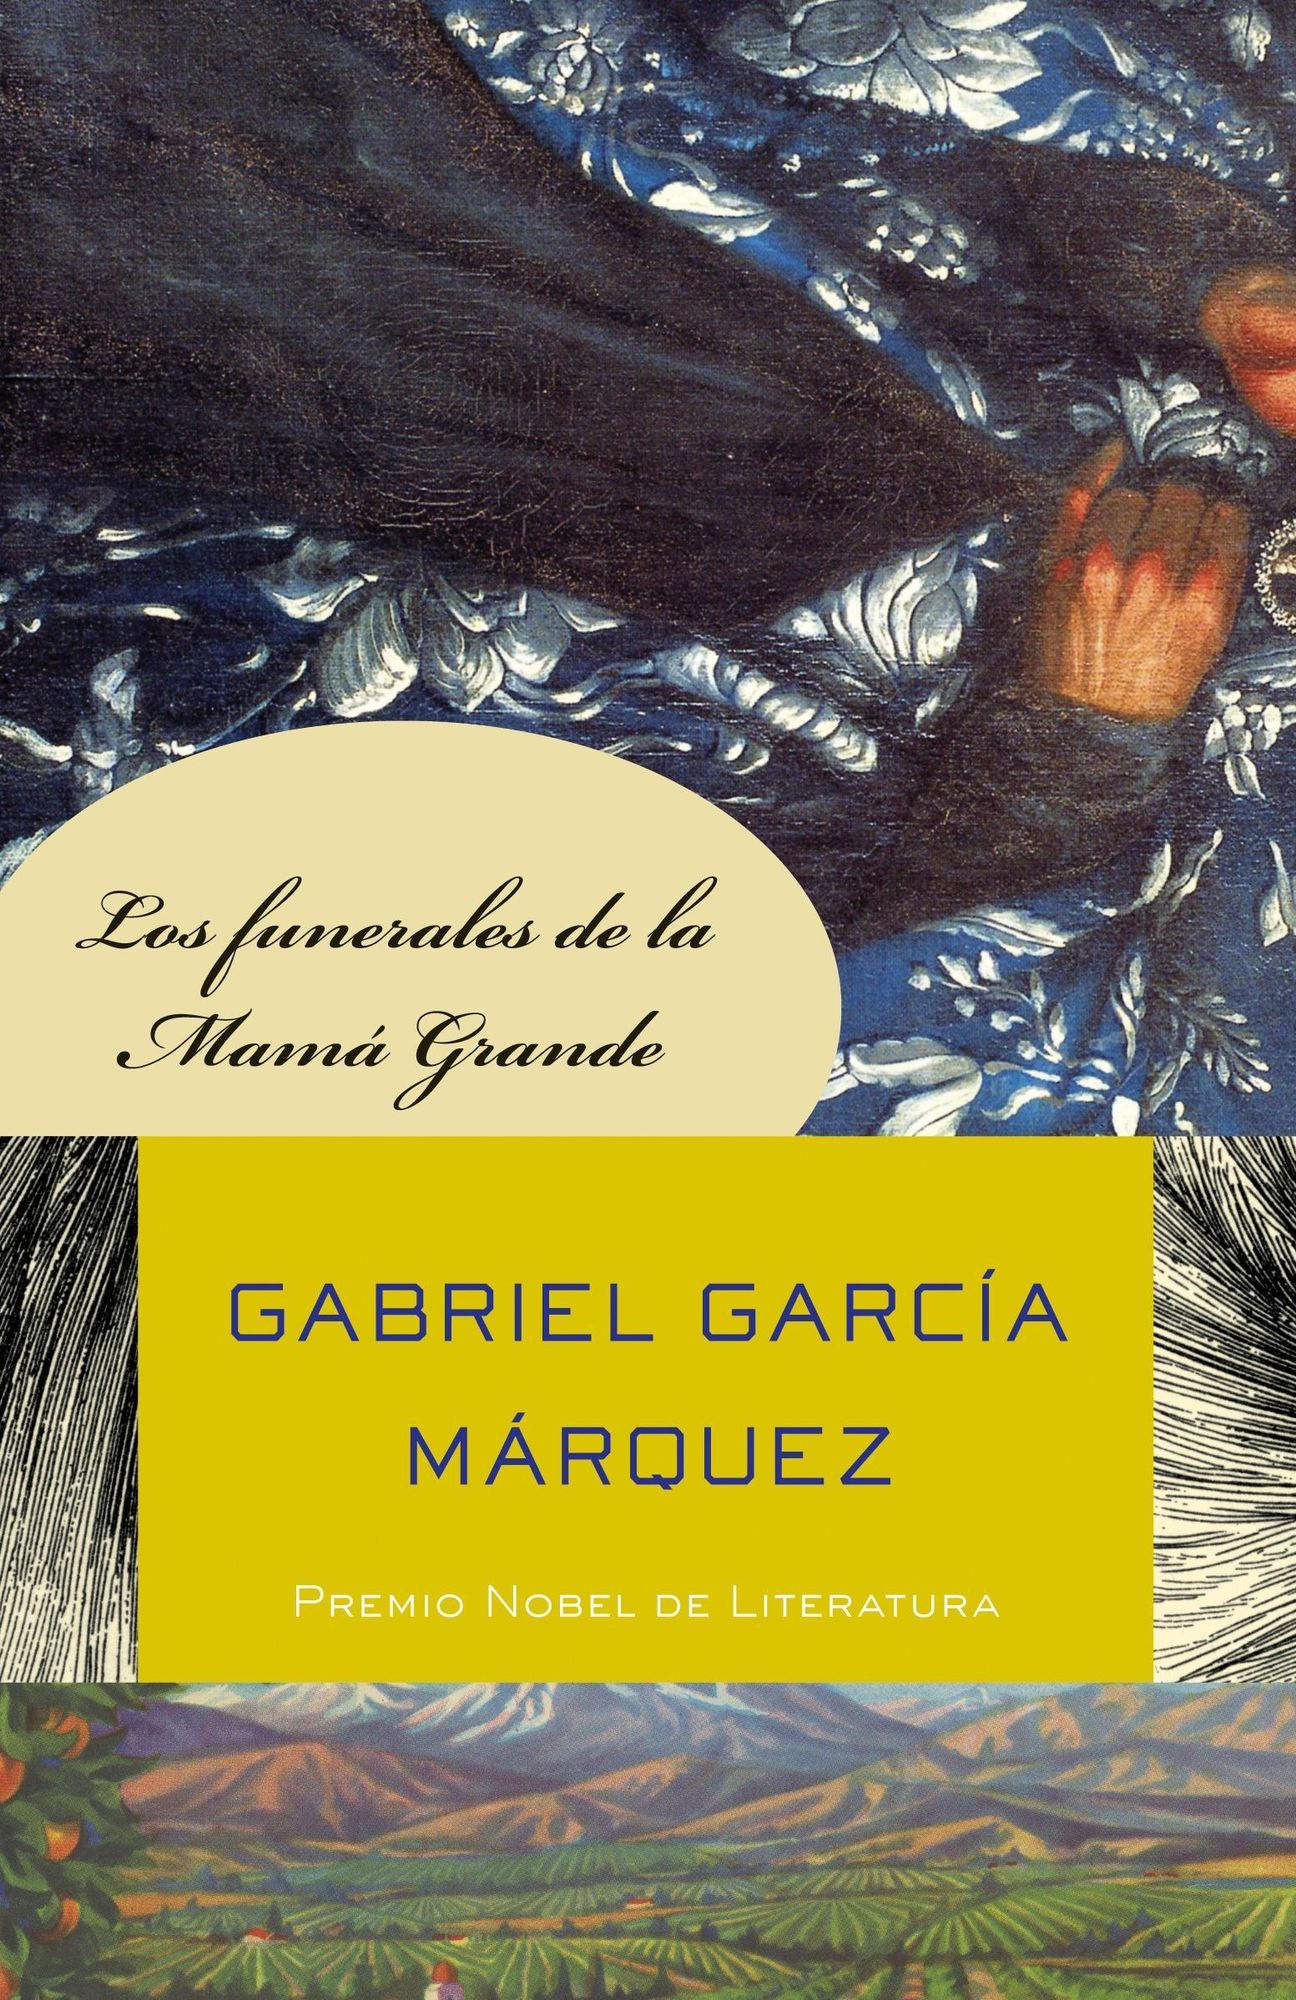 'Taschenbuch'　Big　Grande　Mamá　Funerales　Márquez'　de　von　'978-0-307-47571-8'　'Gabriel　Funeral'　Los　Mama's　la　García